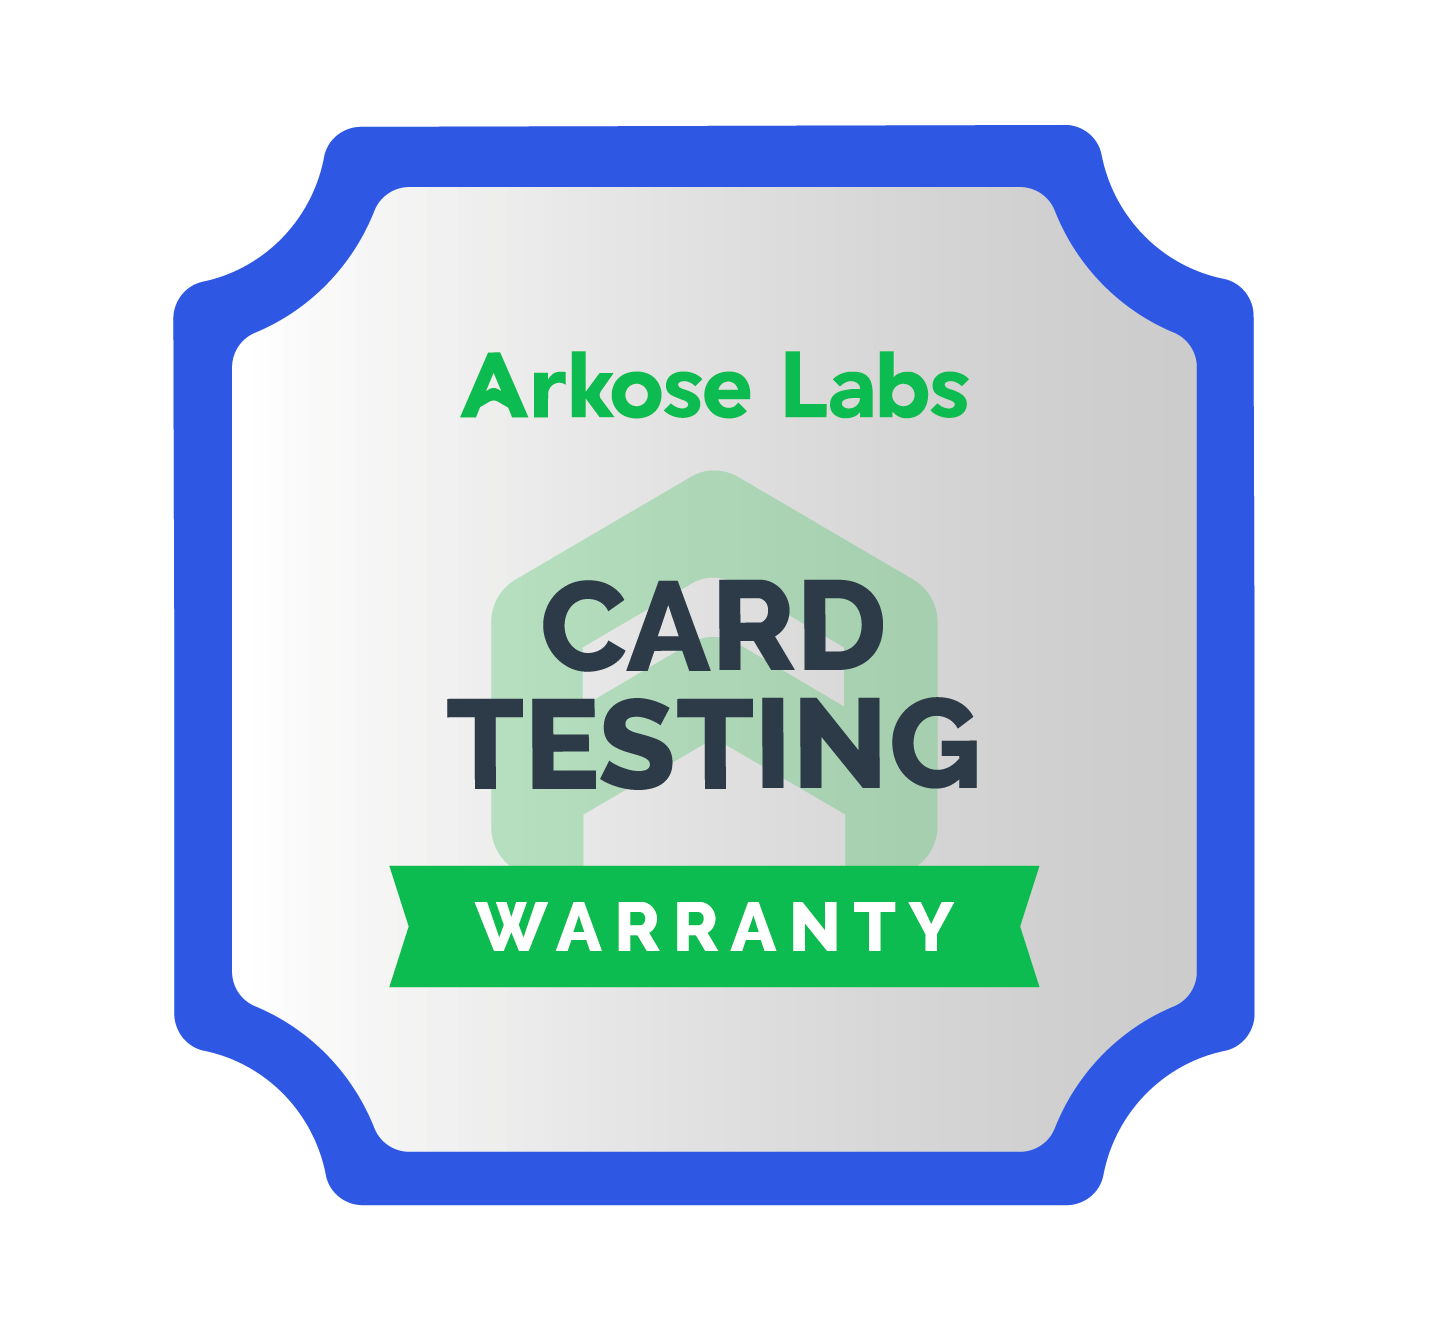 Card Testing Warranty